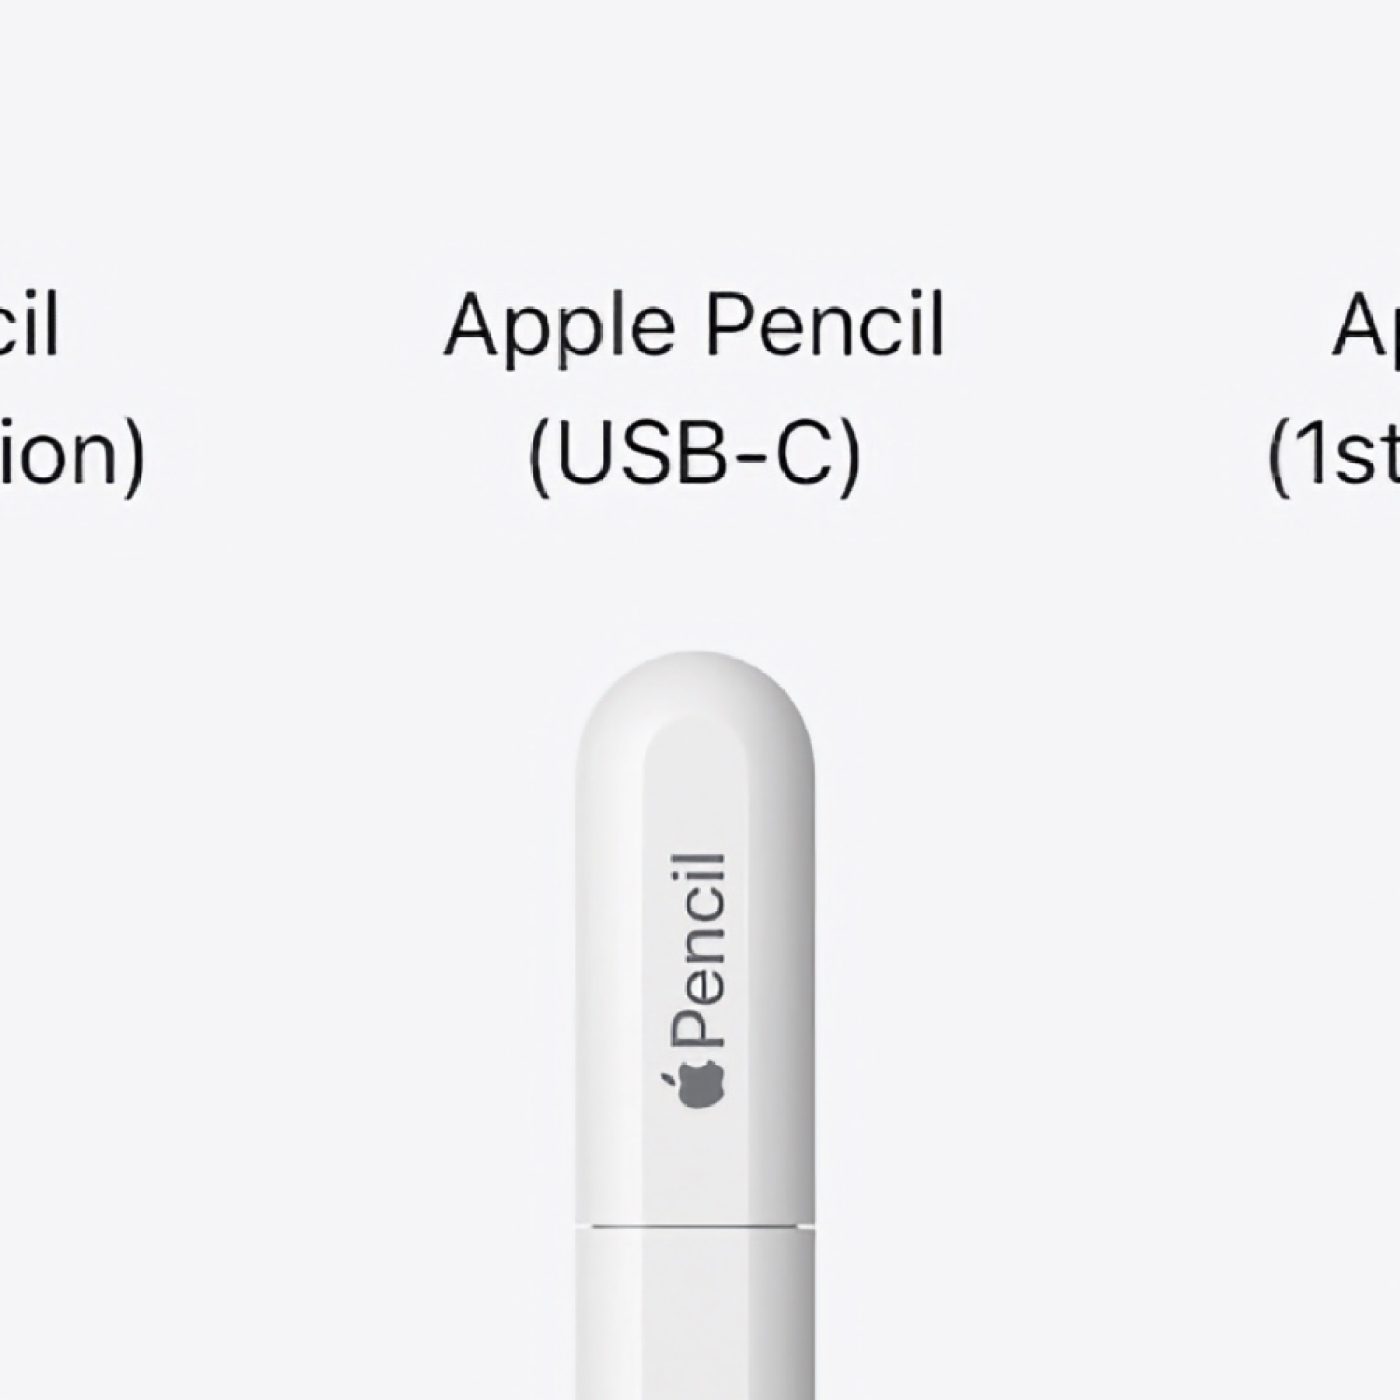 Apple Pencil USB-C vs Gen 1 and Gen 2: specs, price, features